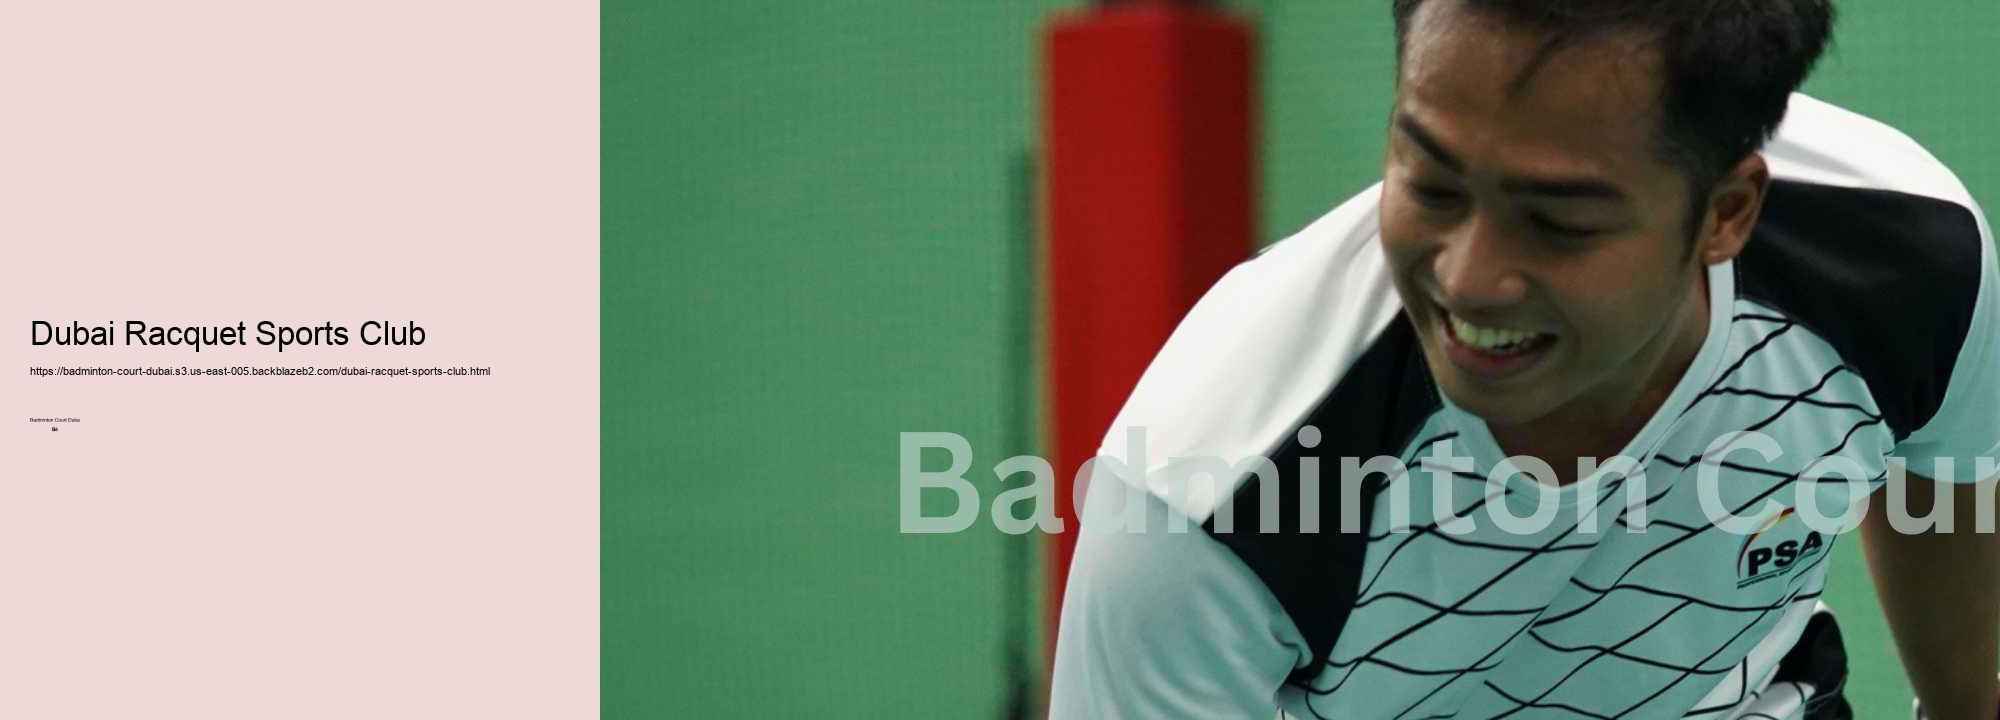 Dubai Racquet Sports Club